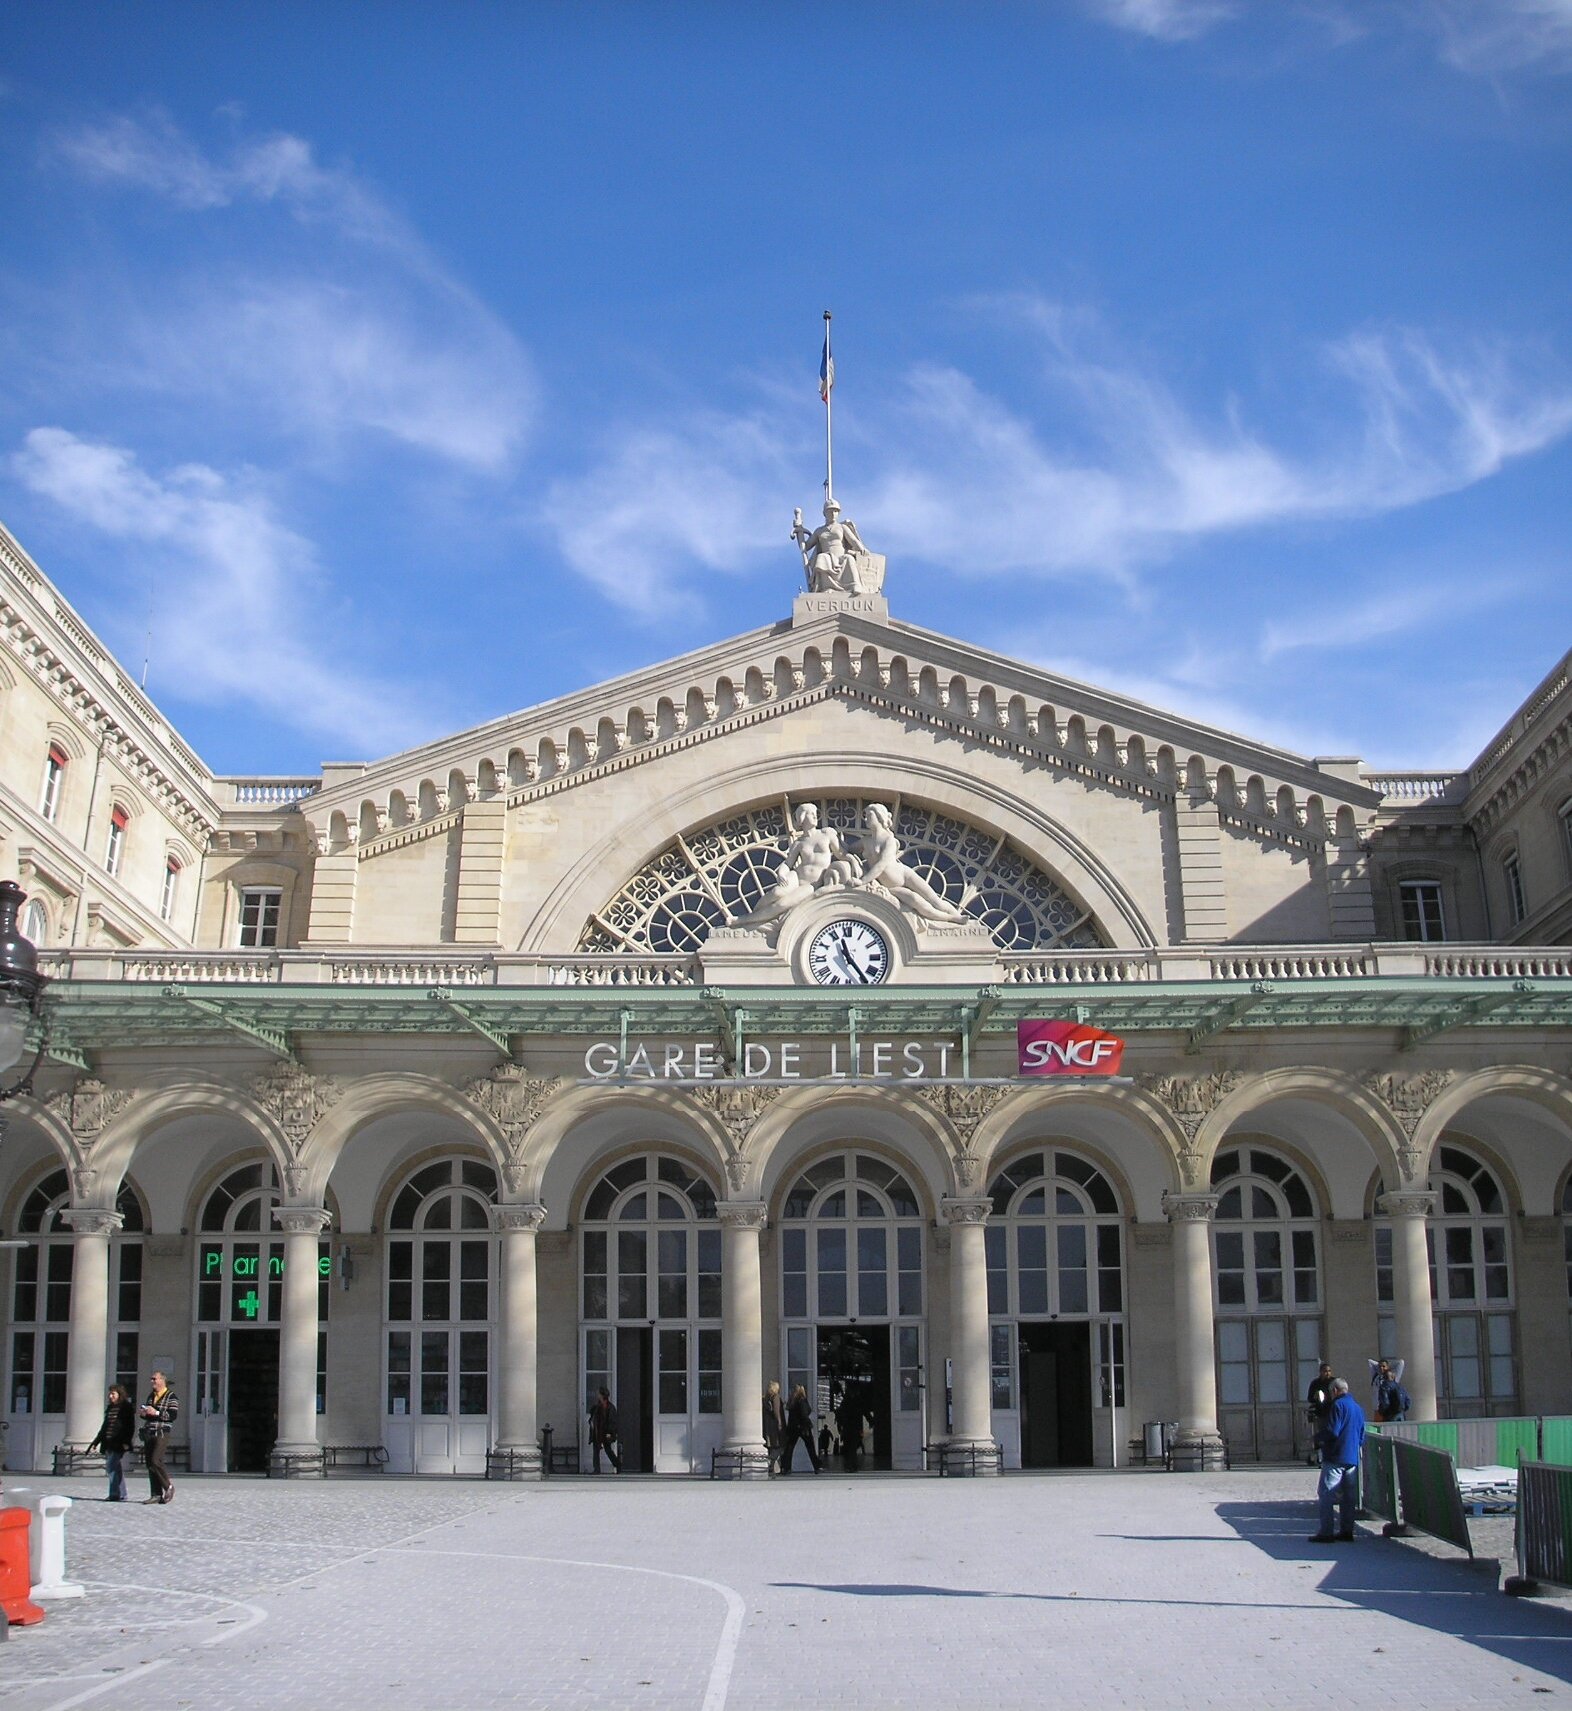 Bientôt un hôtel de luxe Gare de l’Est - ParisVox